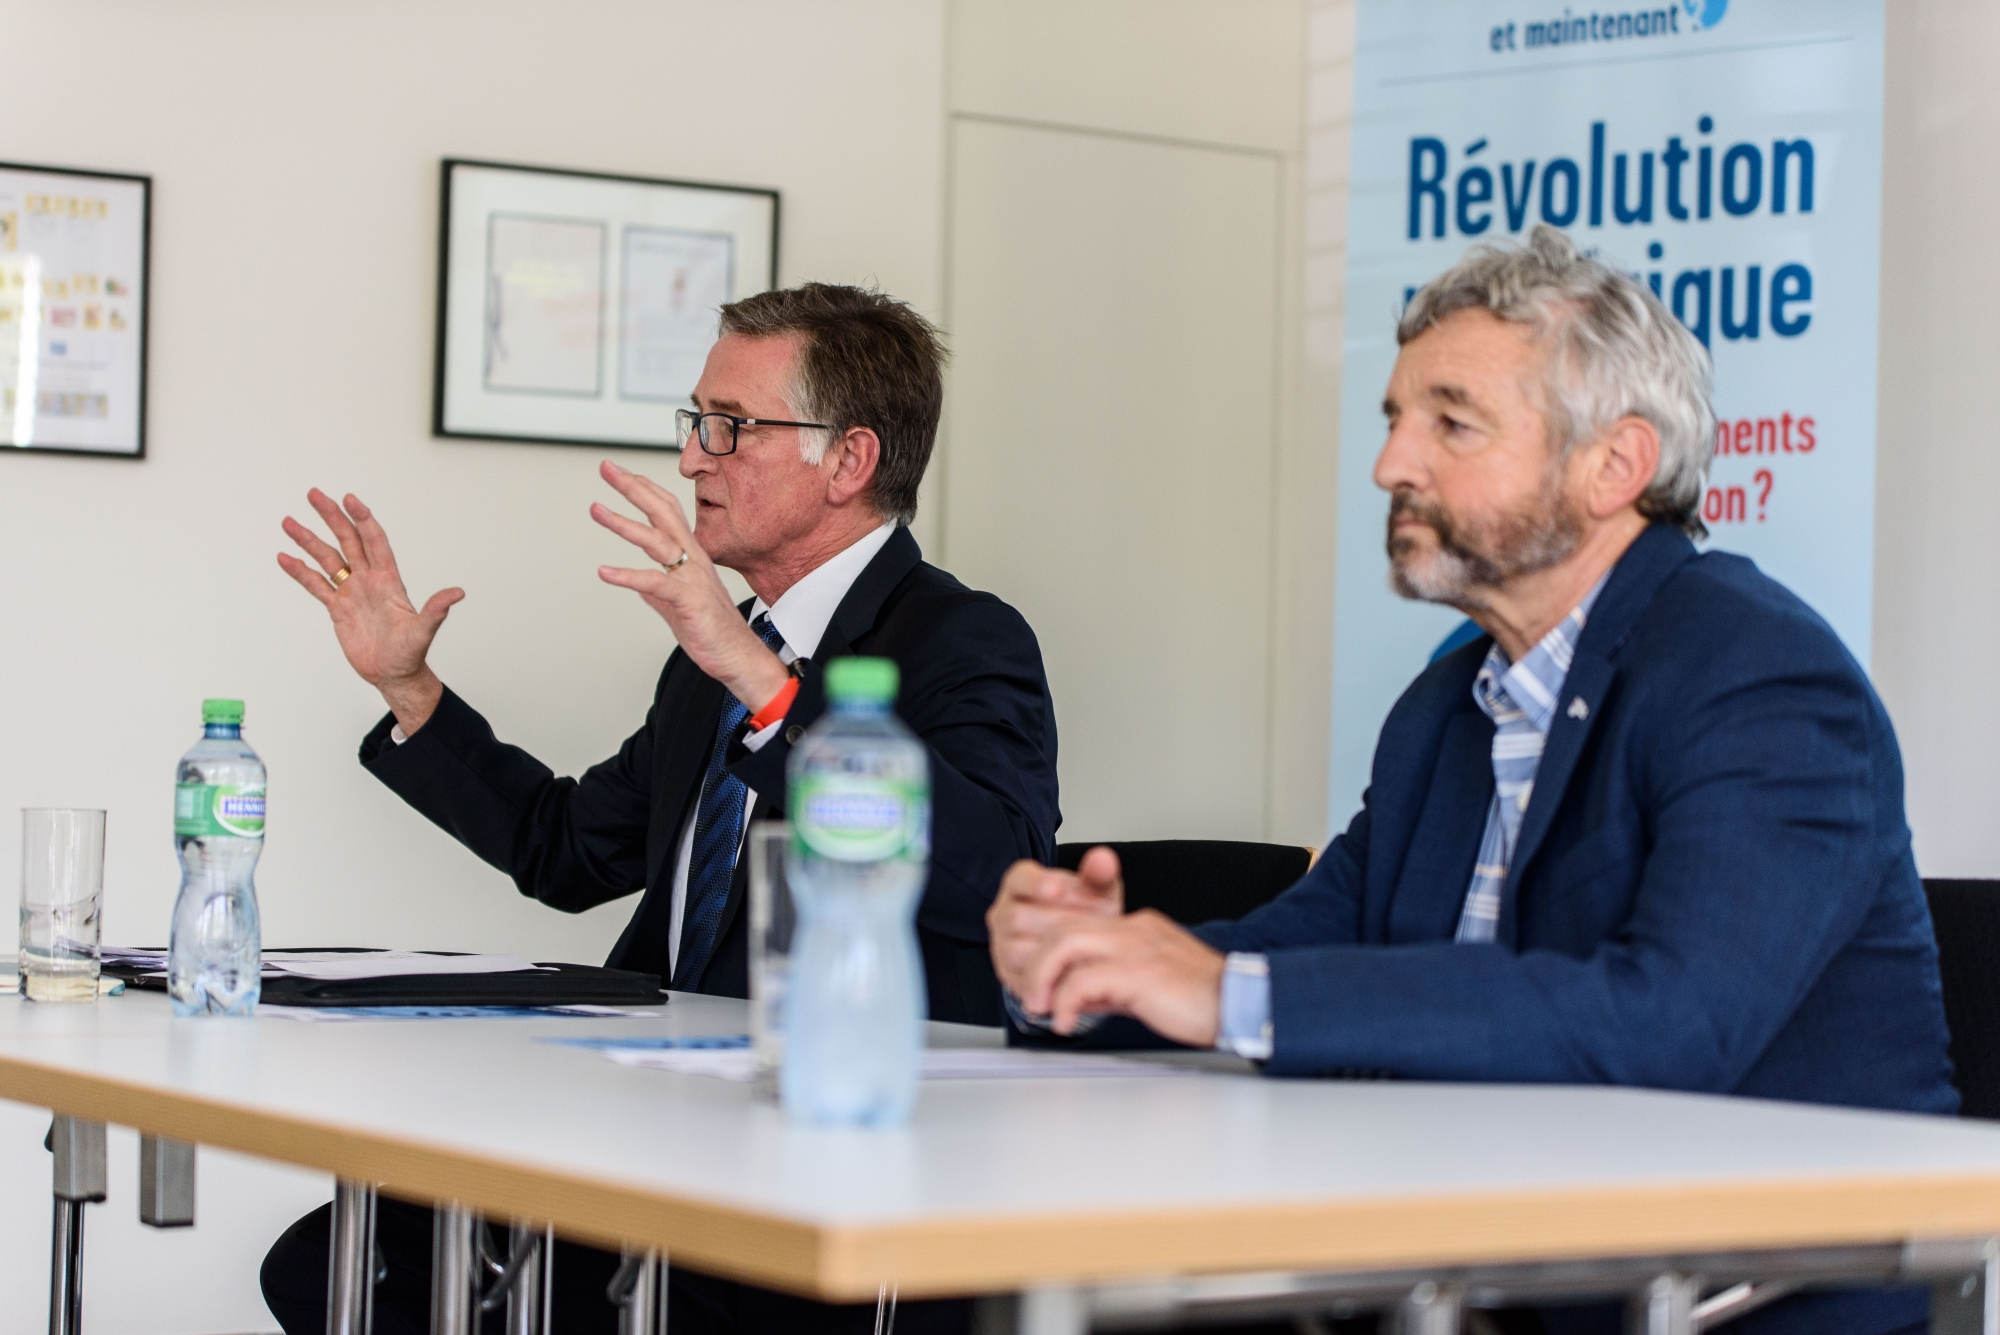 De gauche à droite : Philip Jennings (président Uni Global Union), et le syndic de Nyon Daniel Rosselat organisent un débat sur le thème de la révolution numérique et ses impacts sur notre vie. 